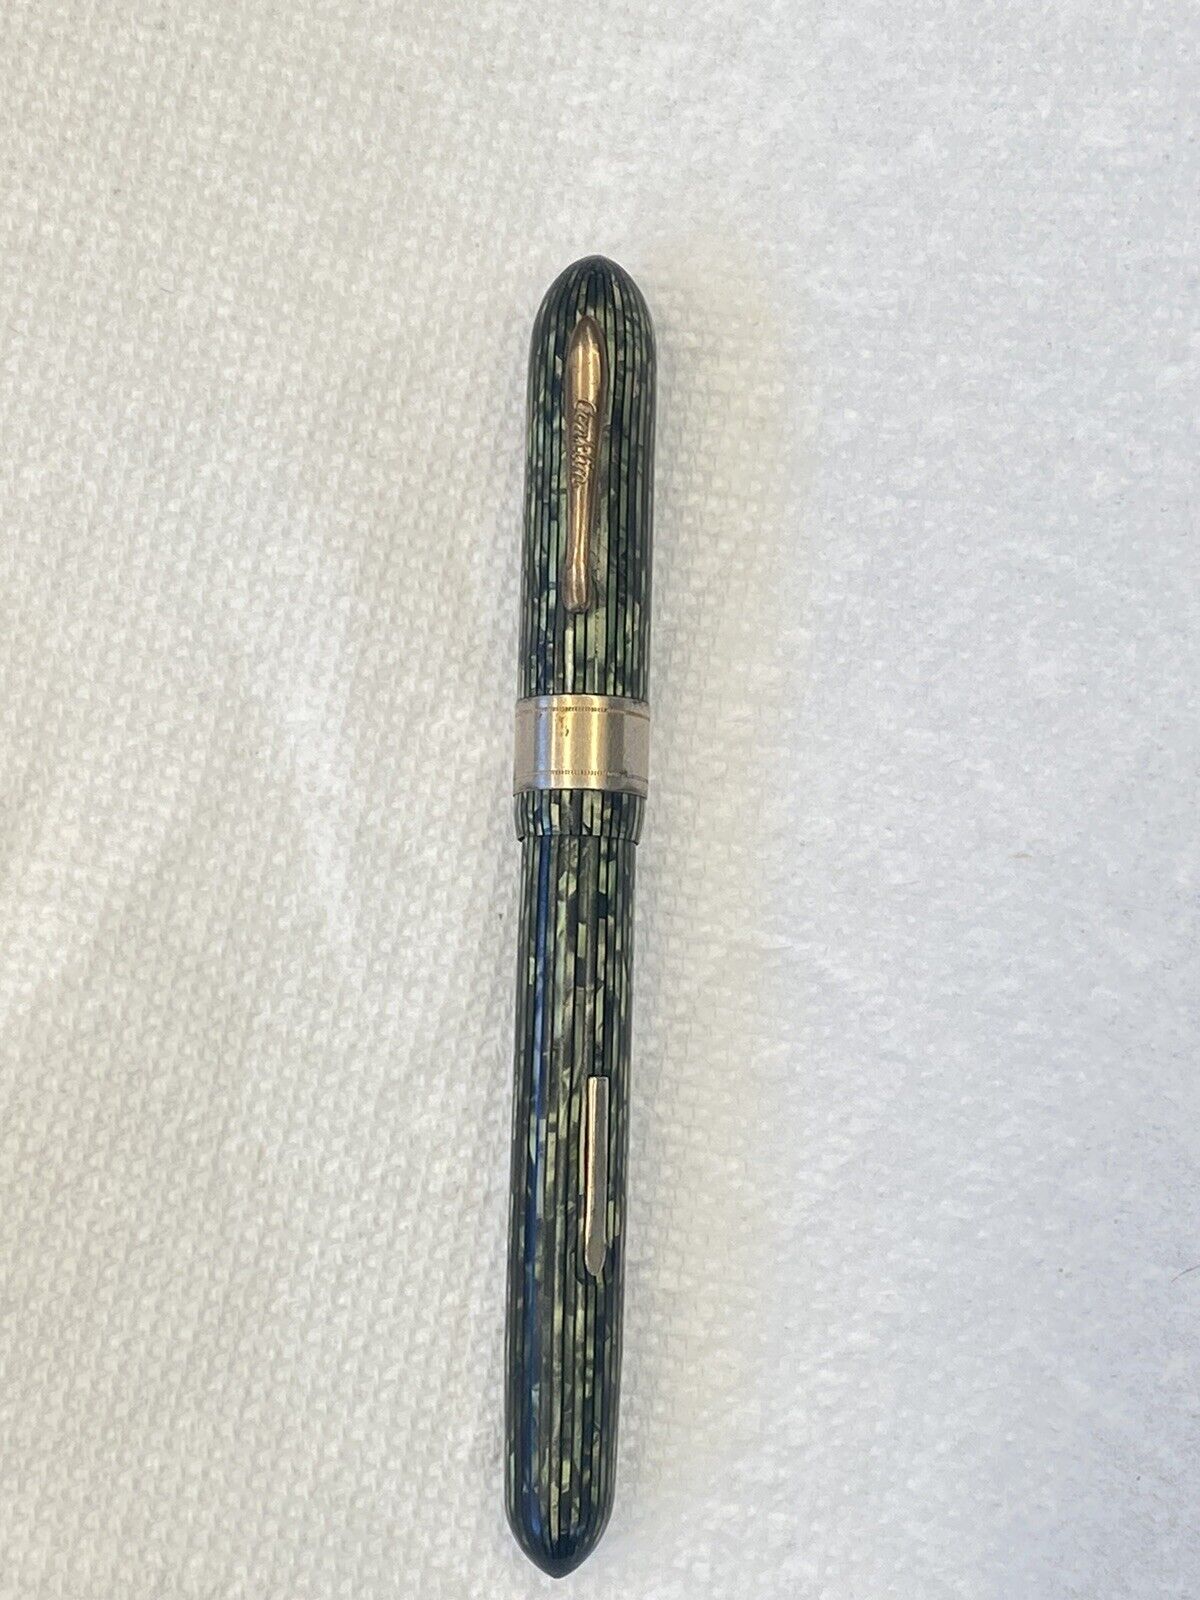 Antique Vintage Conklin Glider Fountain Pen 14k Nib 1944-46